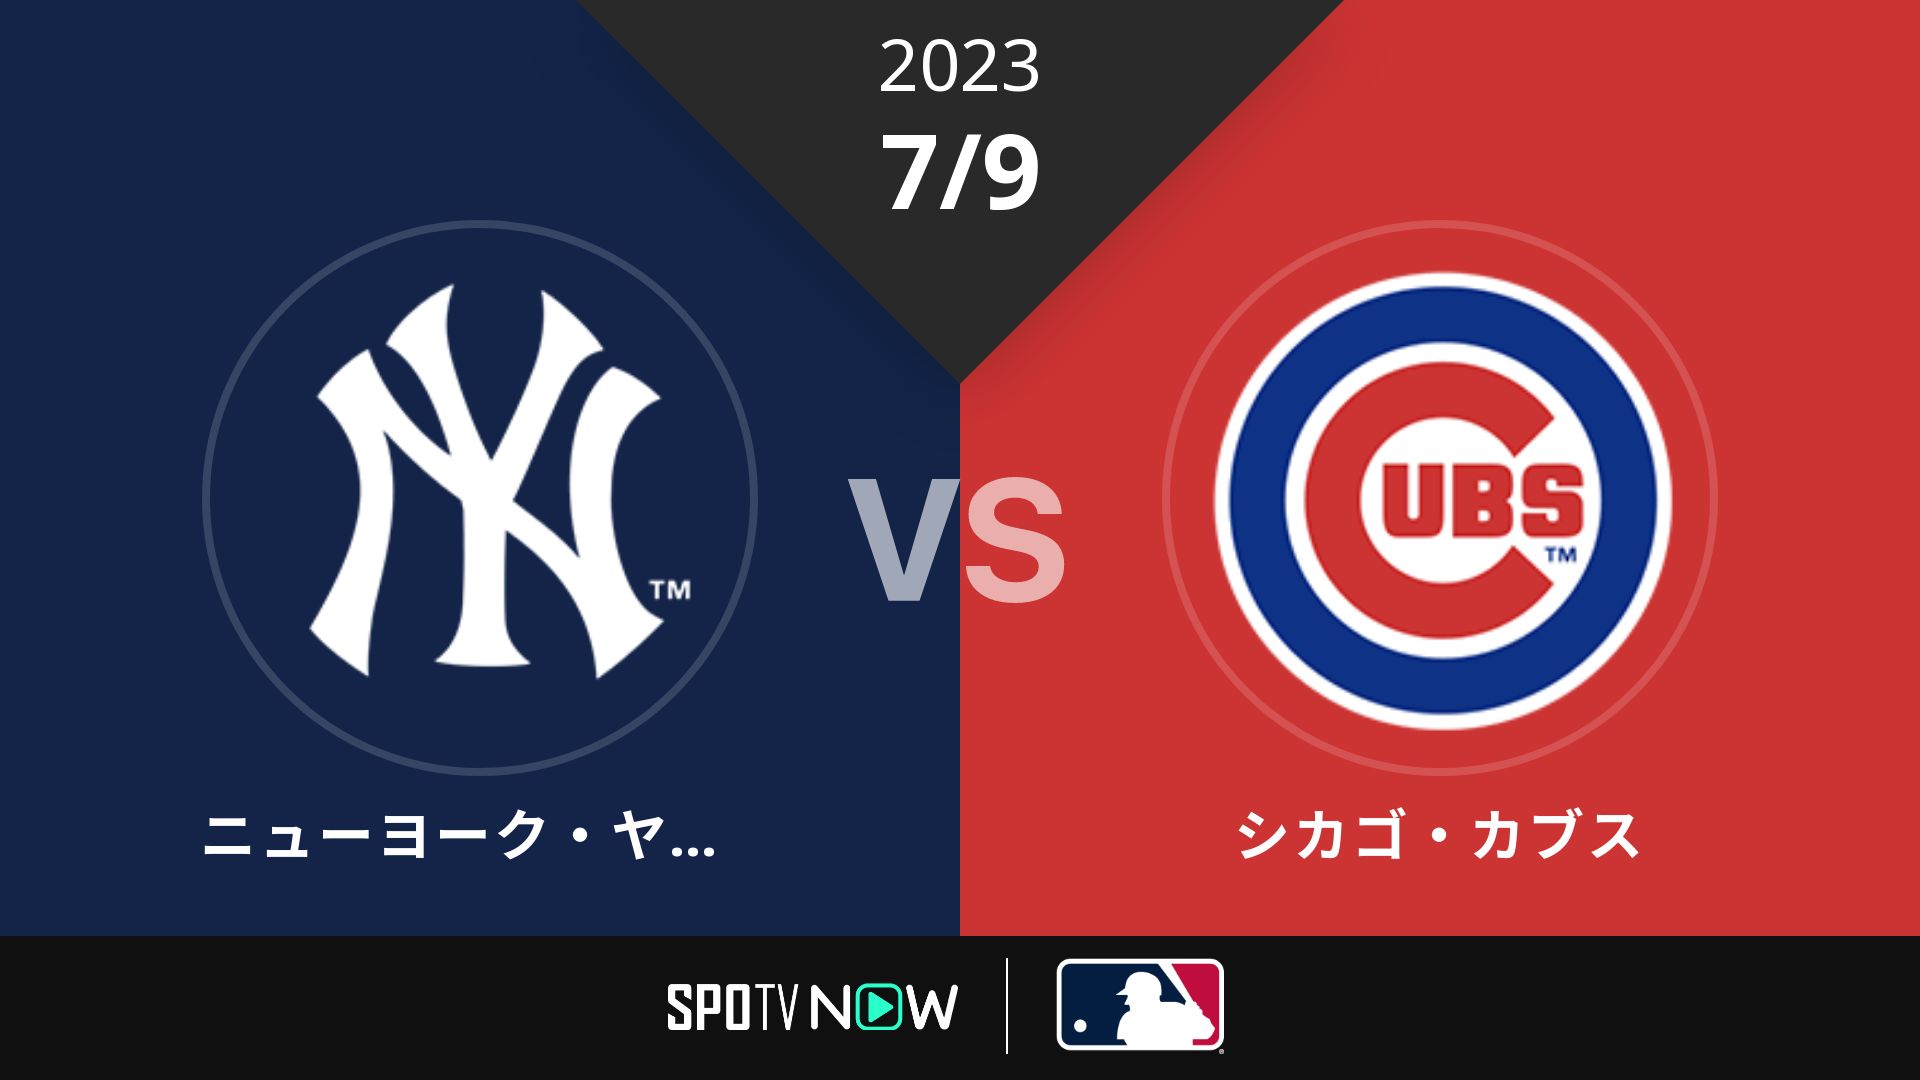 2023/7/9 ヤンキース vs カブス [MLB]